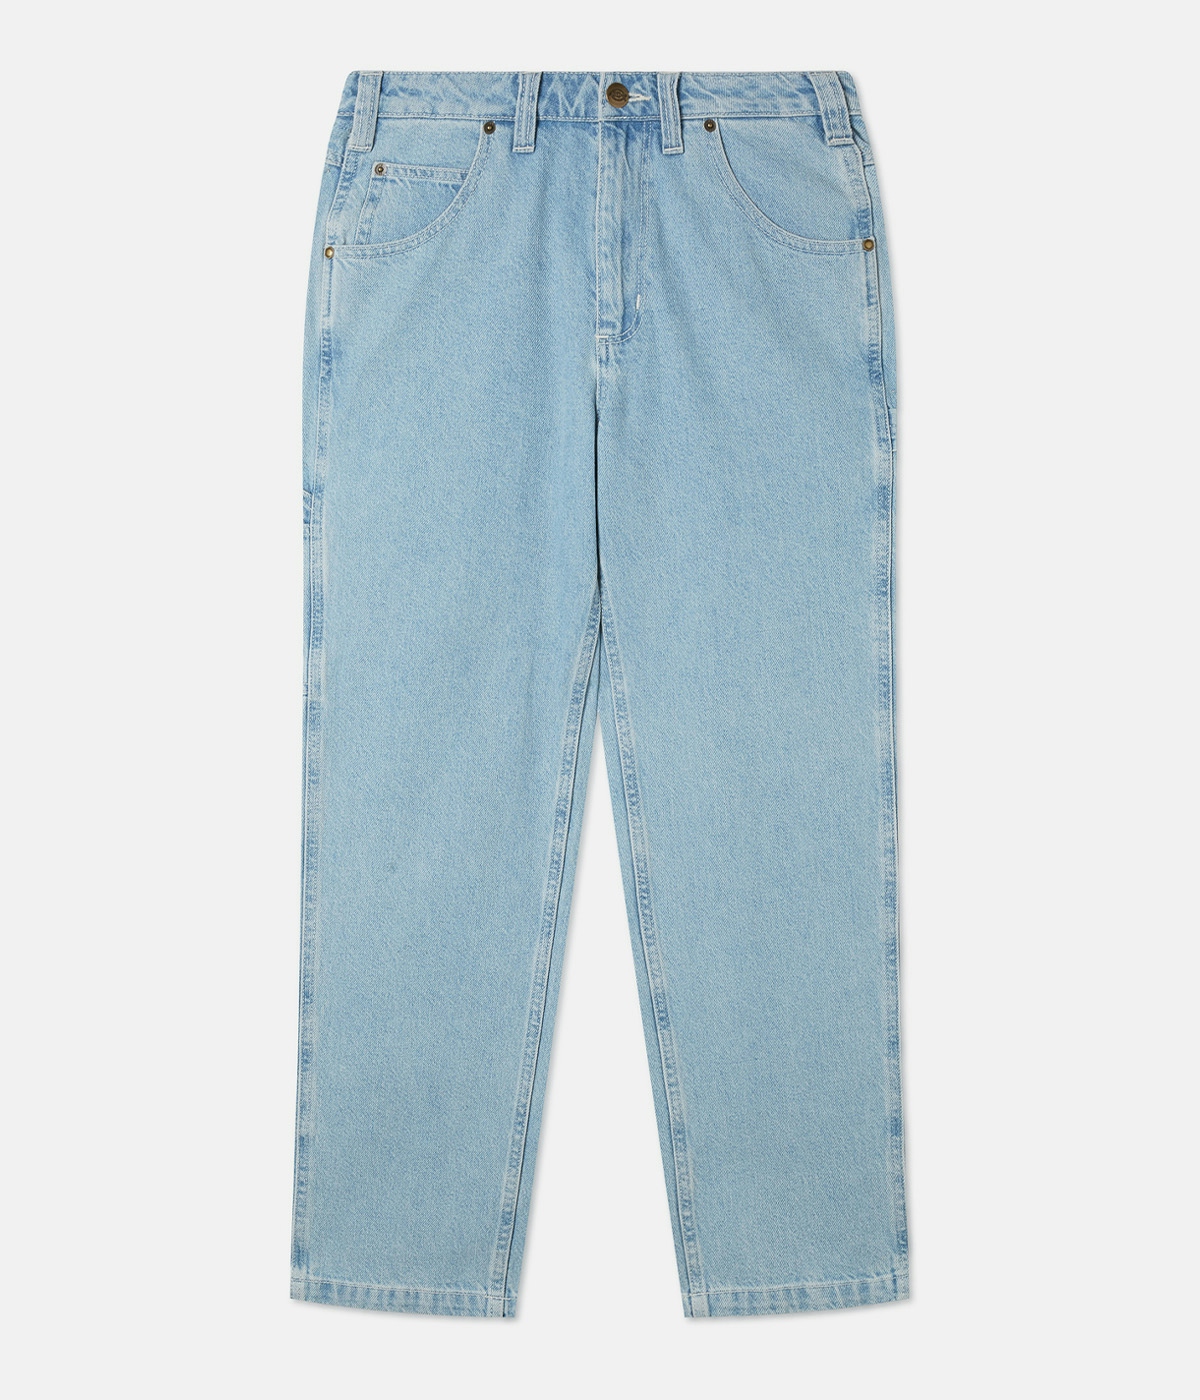 Dickies Ellendale Denim Jeans Vintage Aged Blue 1